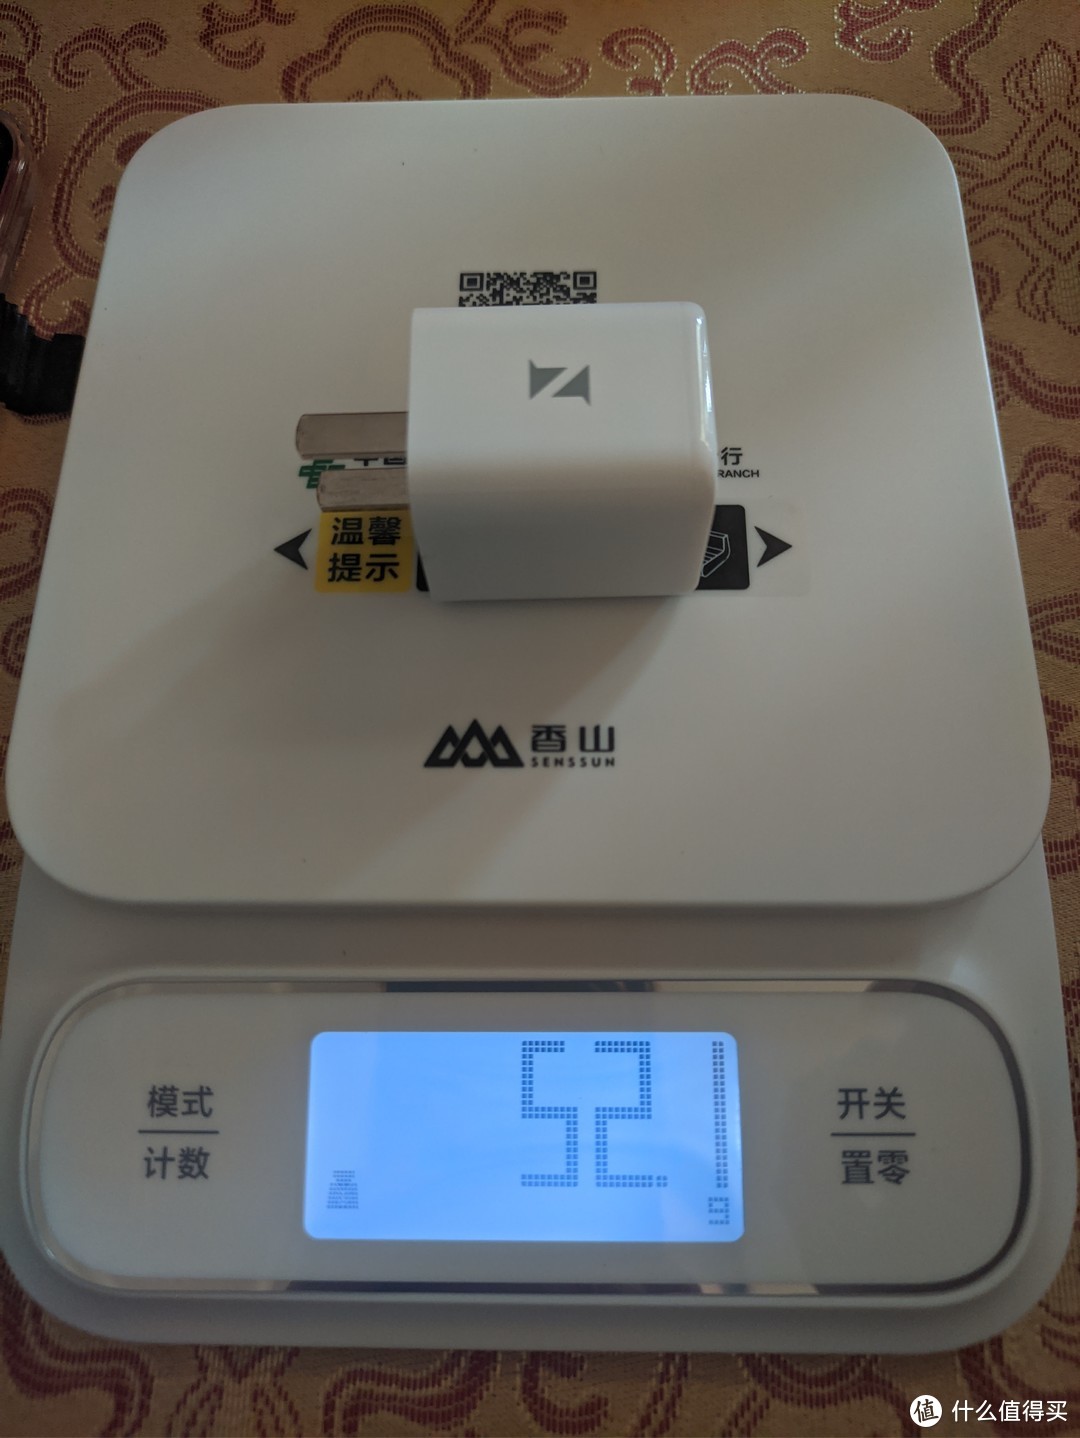 ZIKE 35W氮化镓充电器体验